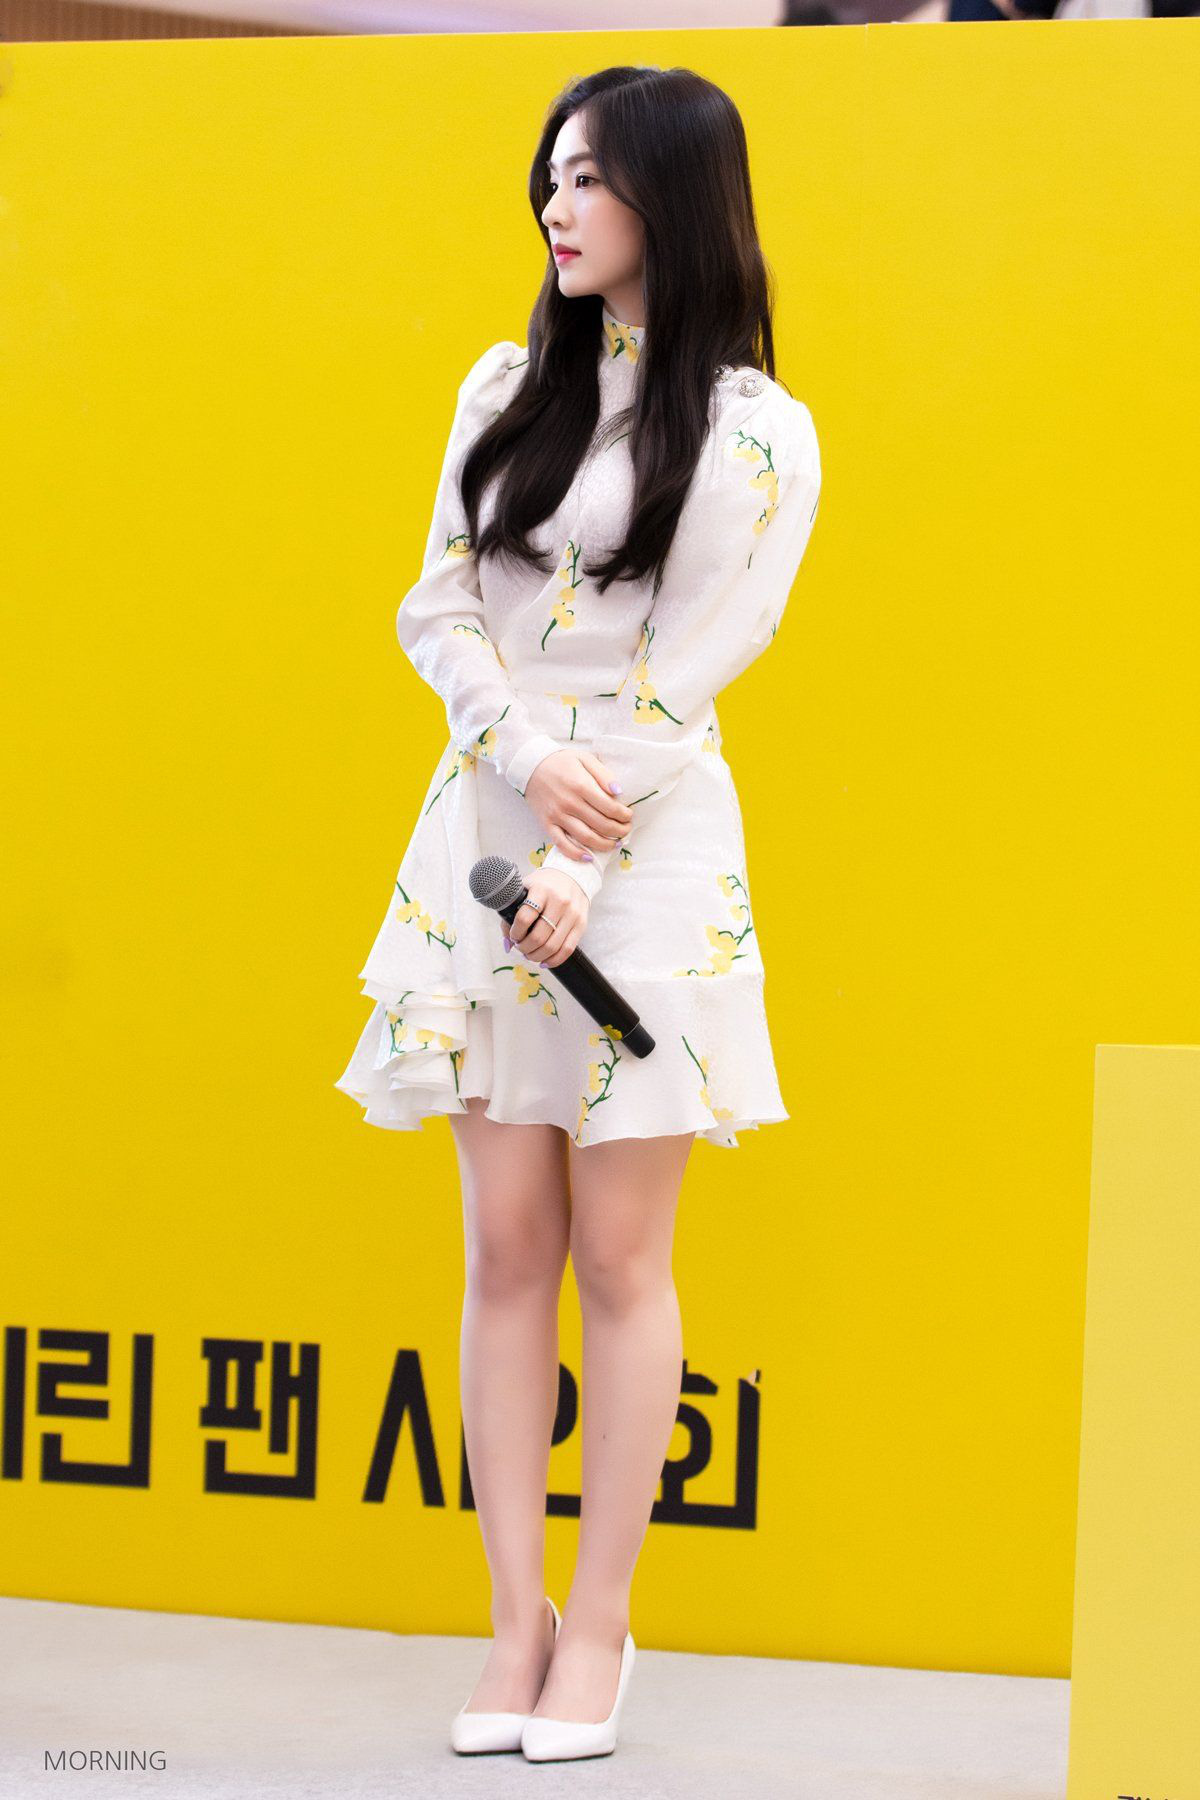 Chân ngắn có tiếng nhưng Irene (Red Velvet) không thiếu những lần hack chân thon dài hơn nhờ một mẫu giày tủ - Ảnh 2.